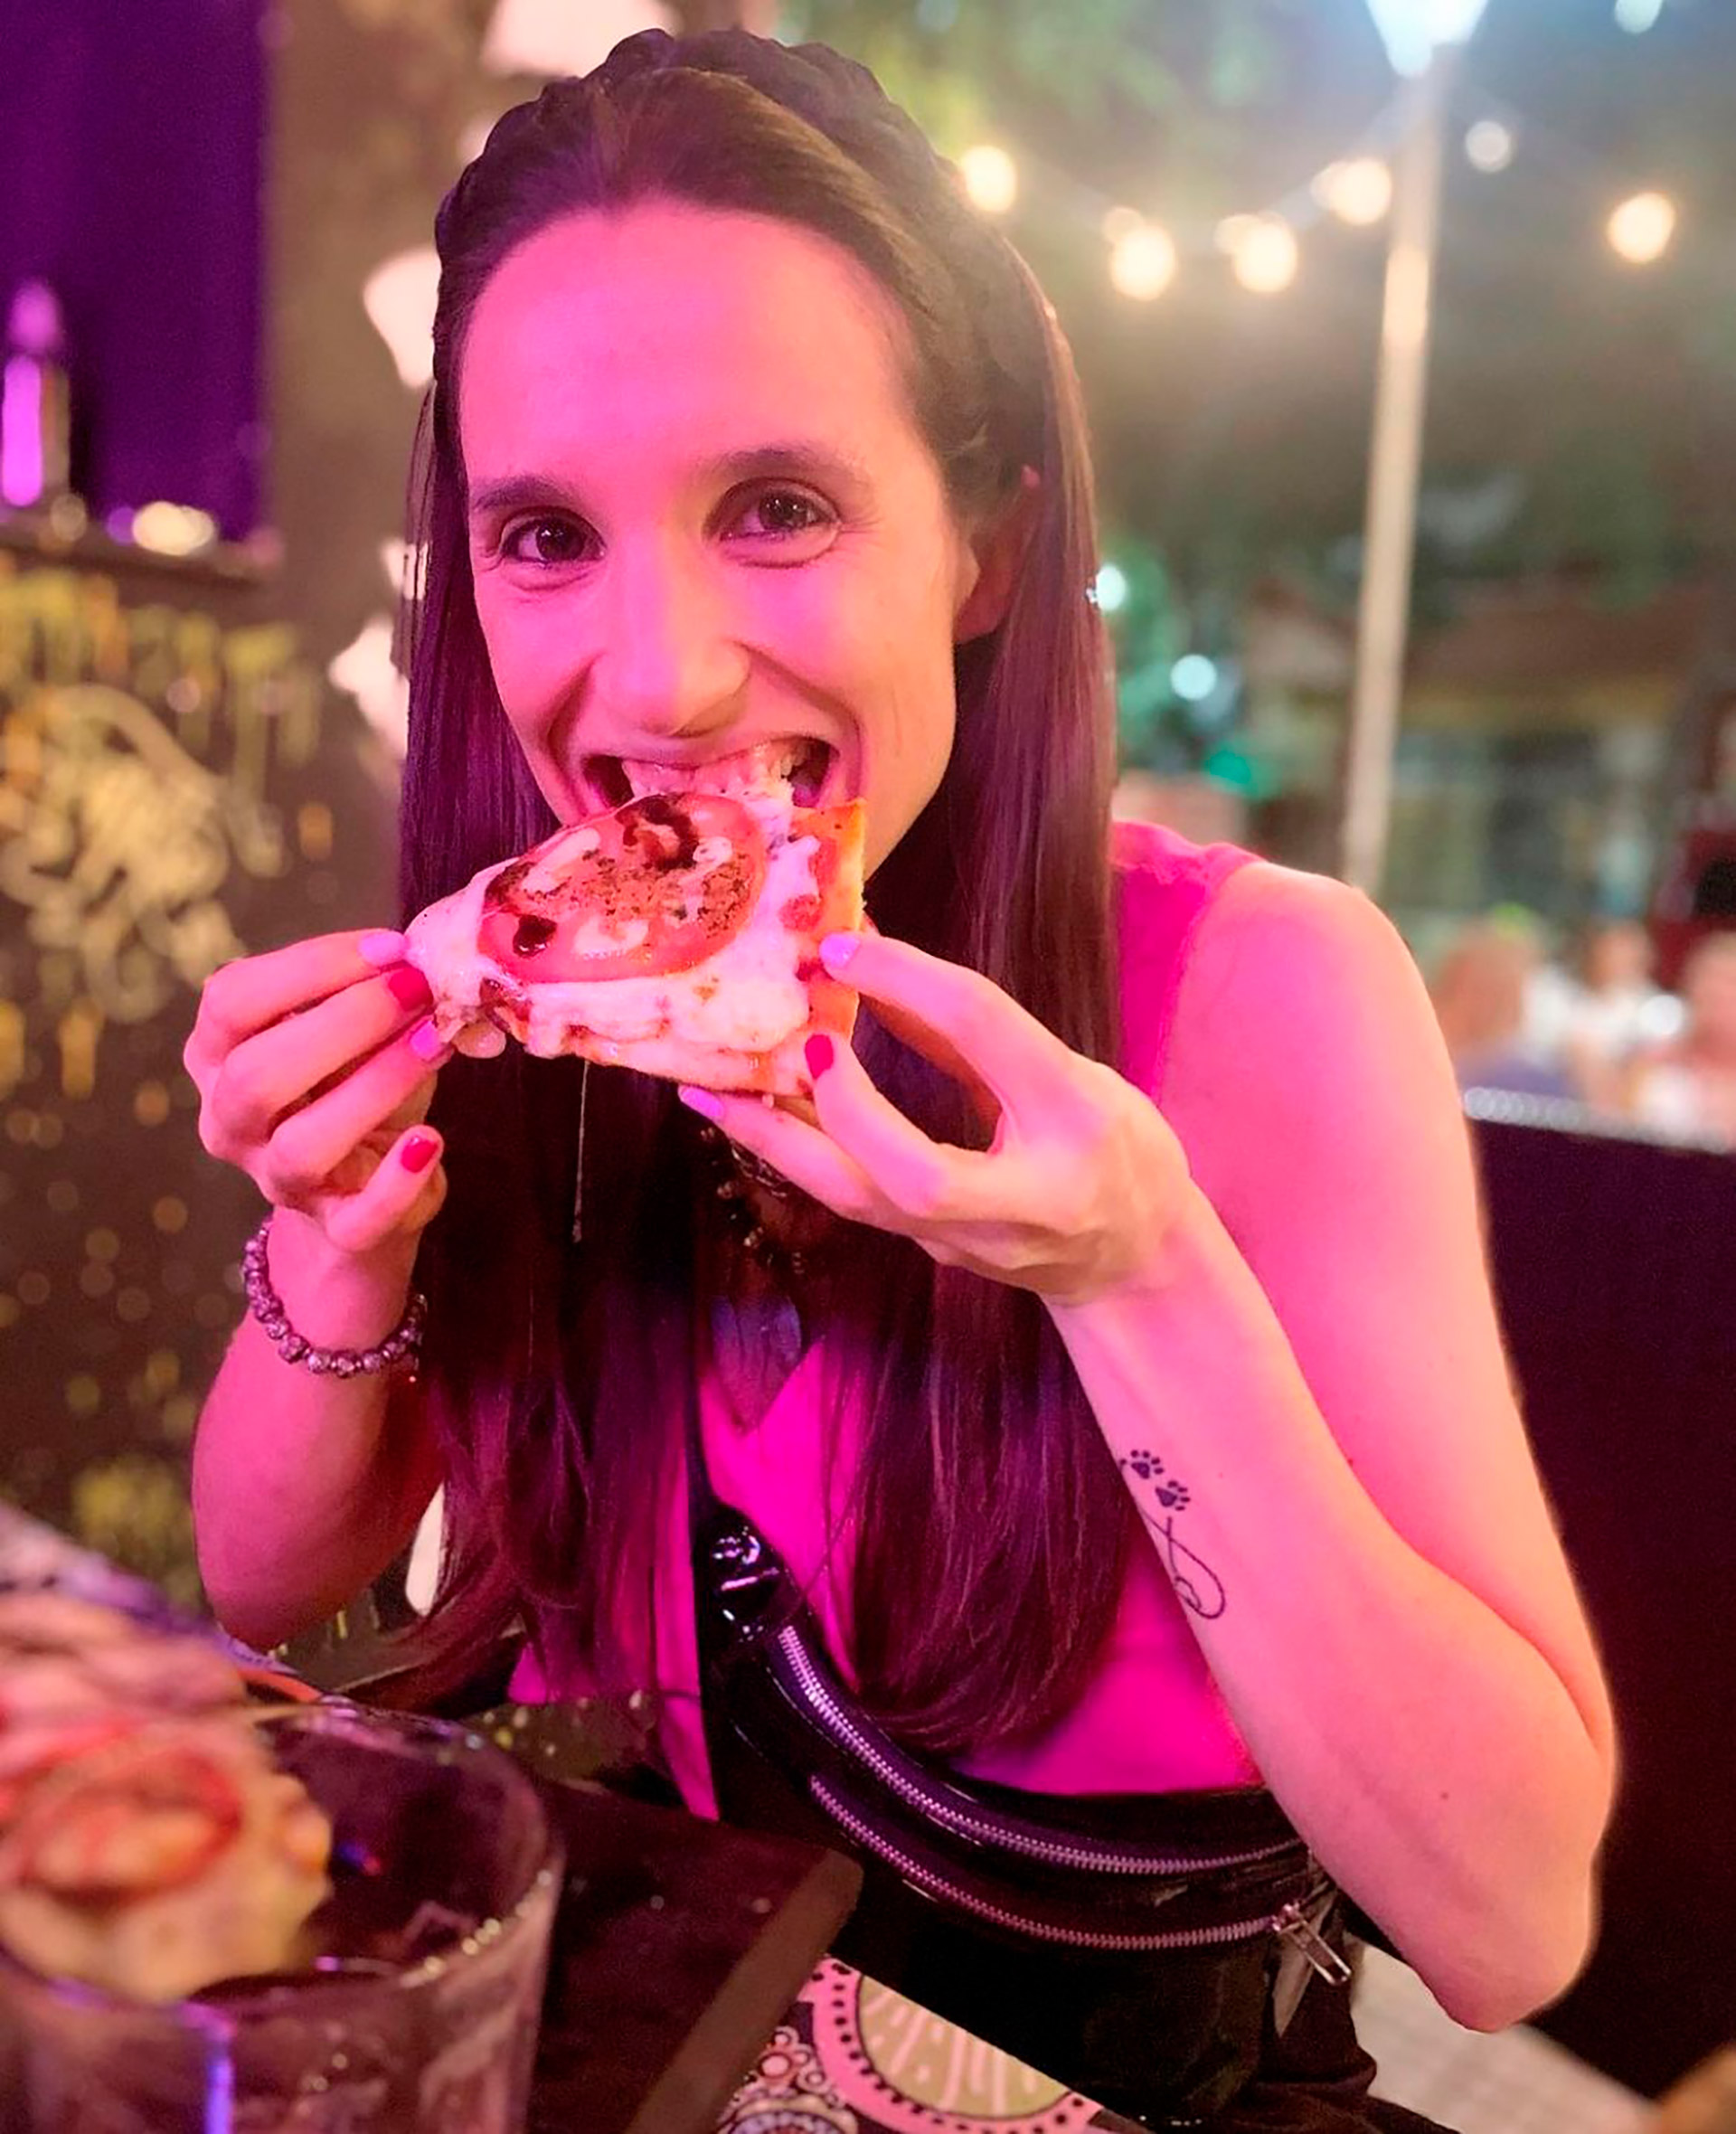 Agustina Murcho condivide consigli salutari e parla onestamente di disturbi alimentari sul suo profilo Instagram @nutricion.ag